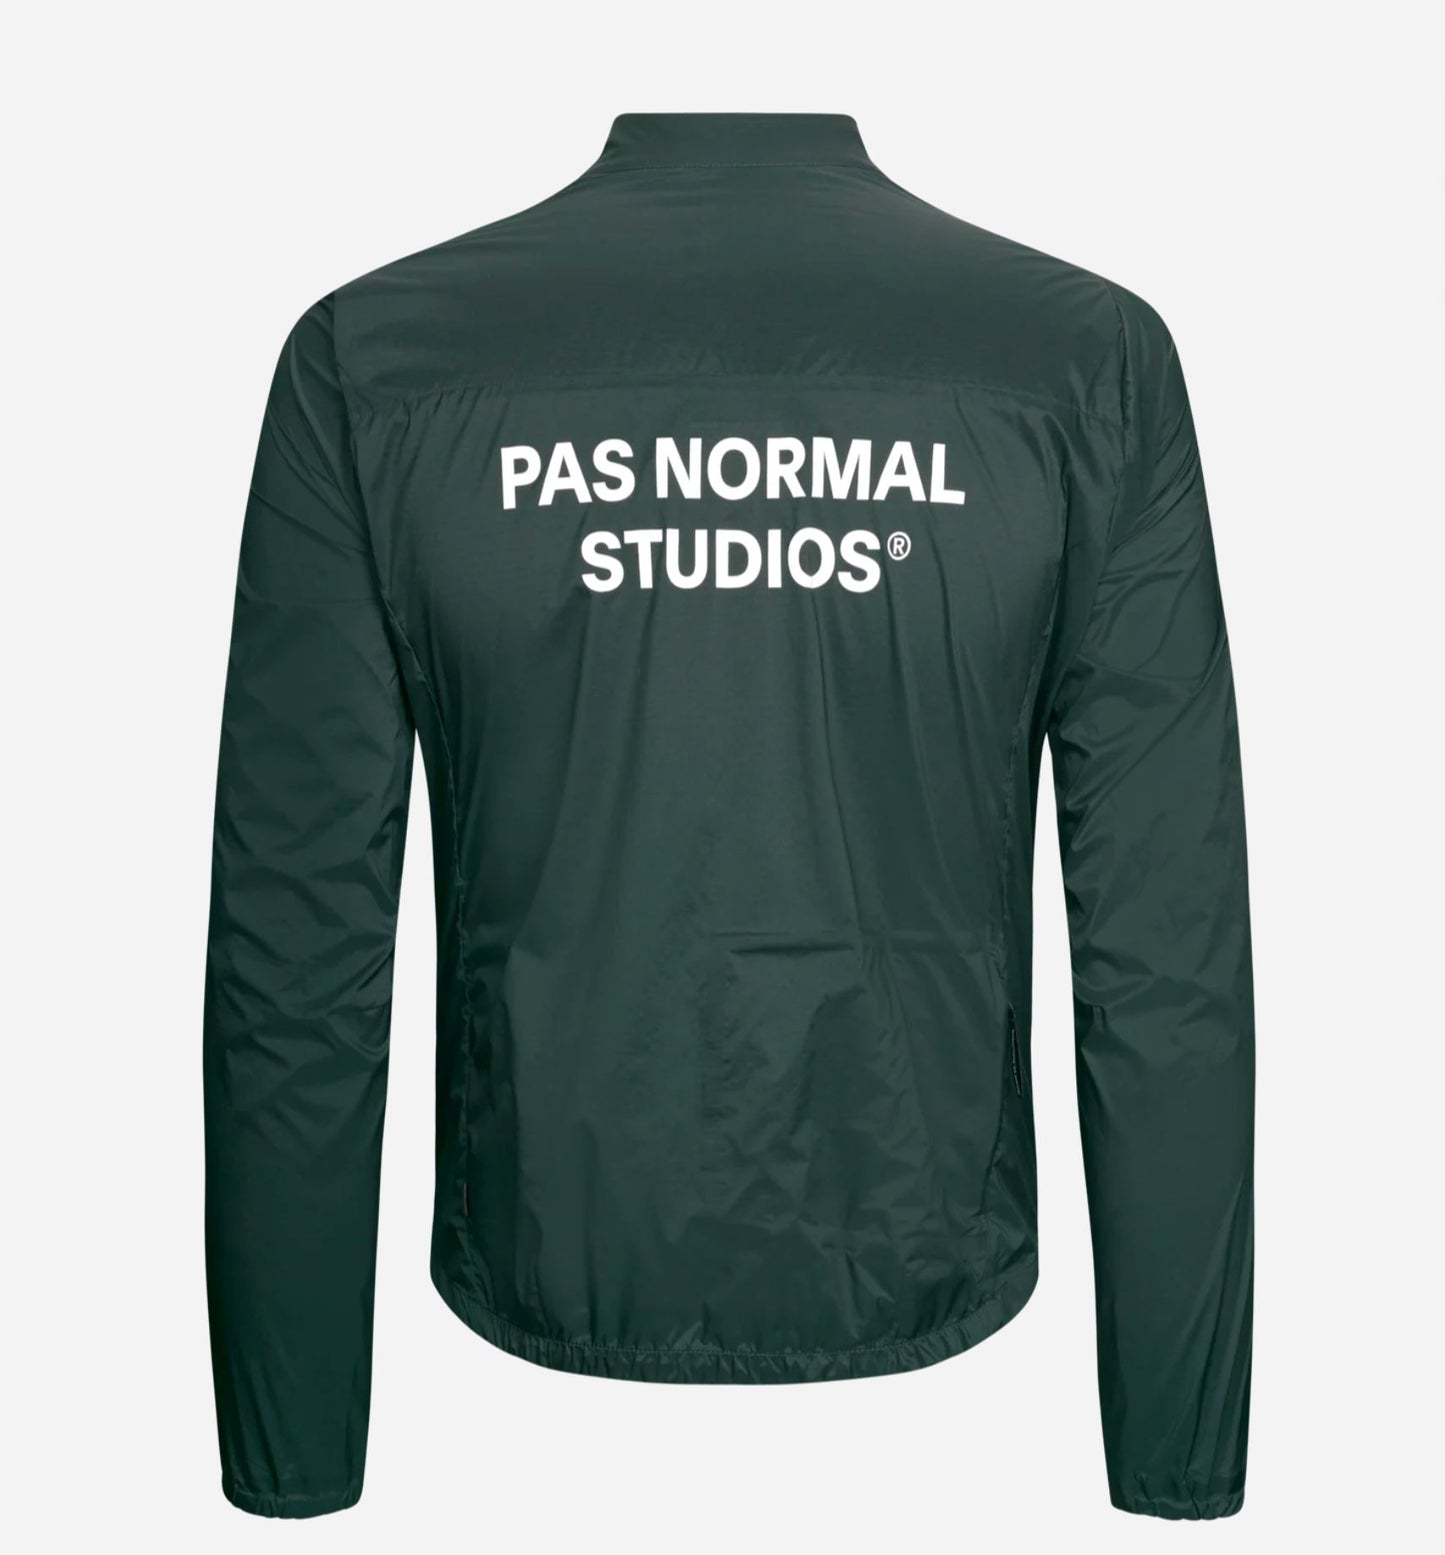 Pas Normal Studios - Manteau Essential Insulated Homme Manteaux Pas Normal Studios 